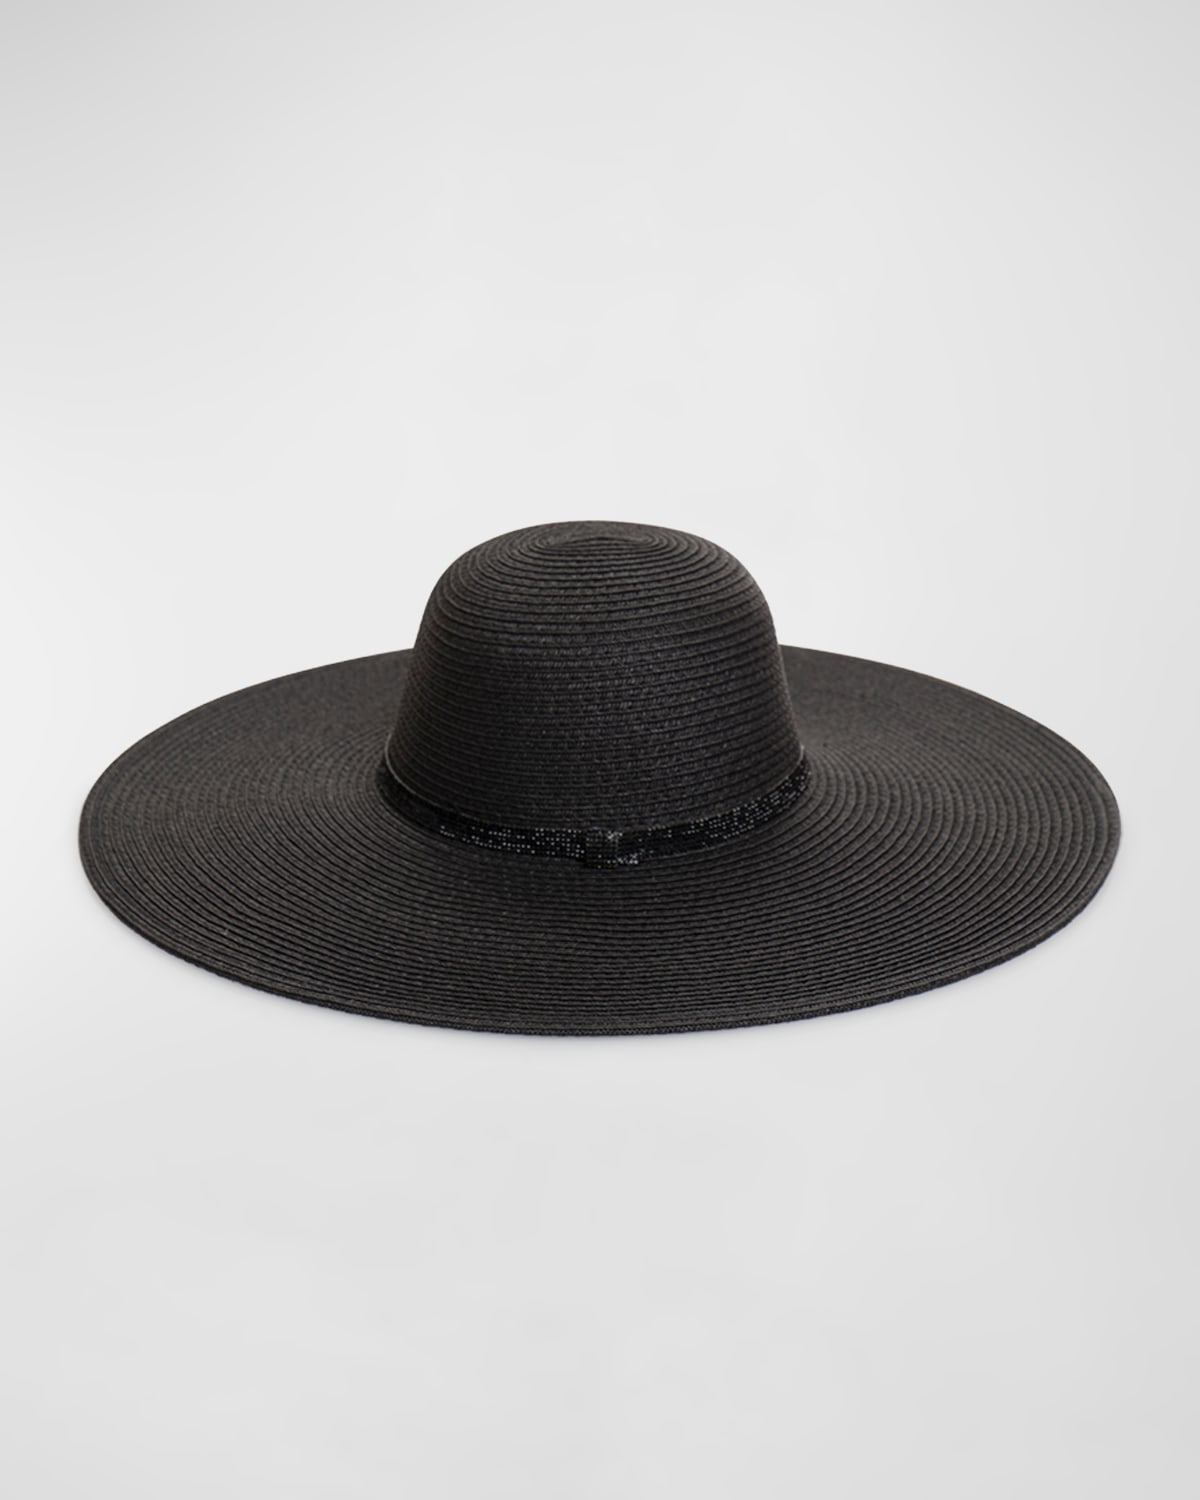 Pia Rossini Romero Large Brim Hat In Black